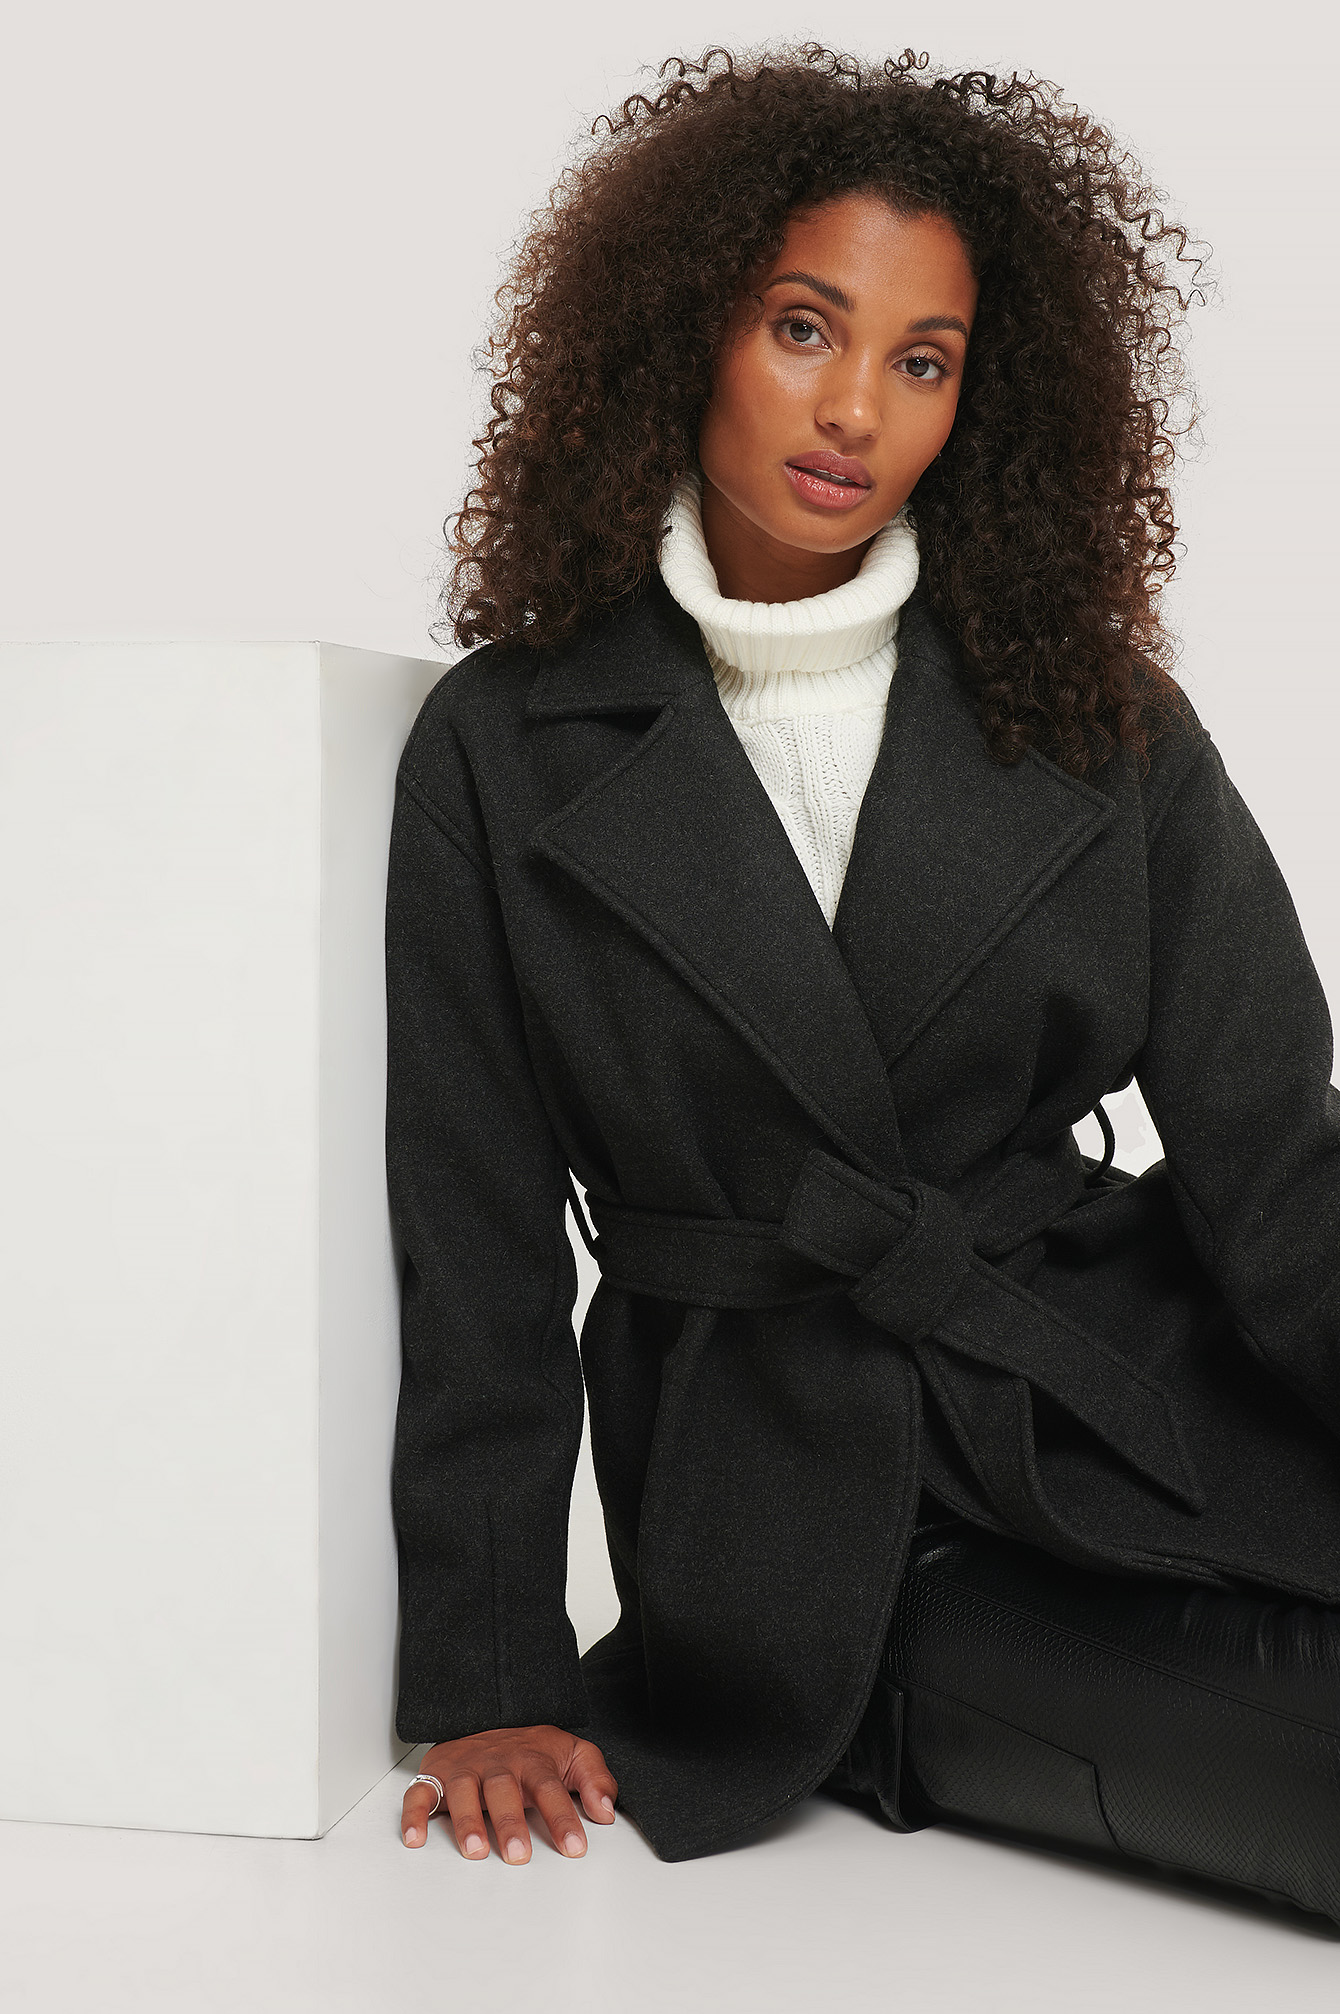 manteau lainage noir femme